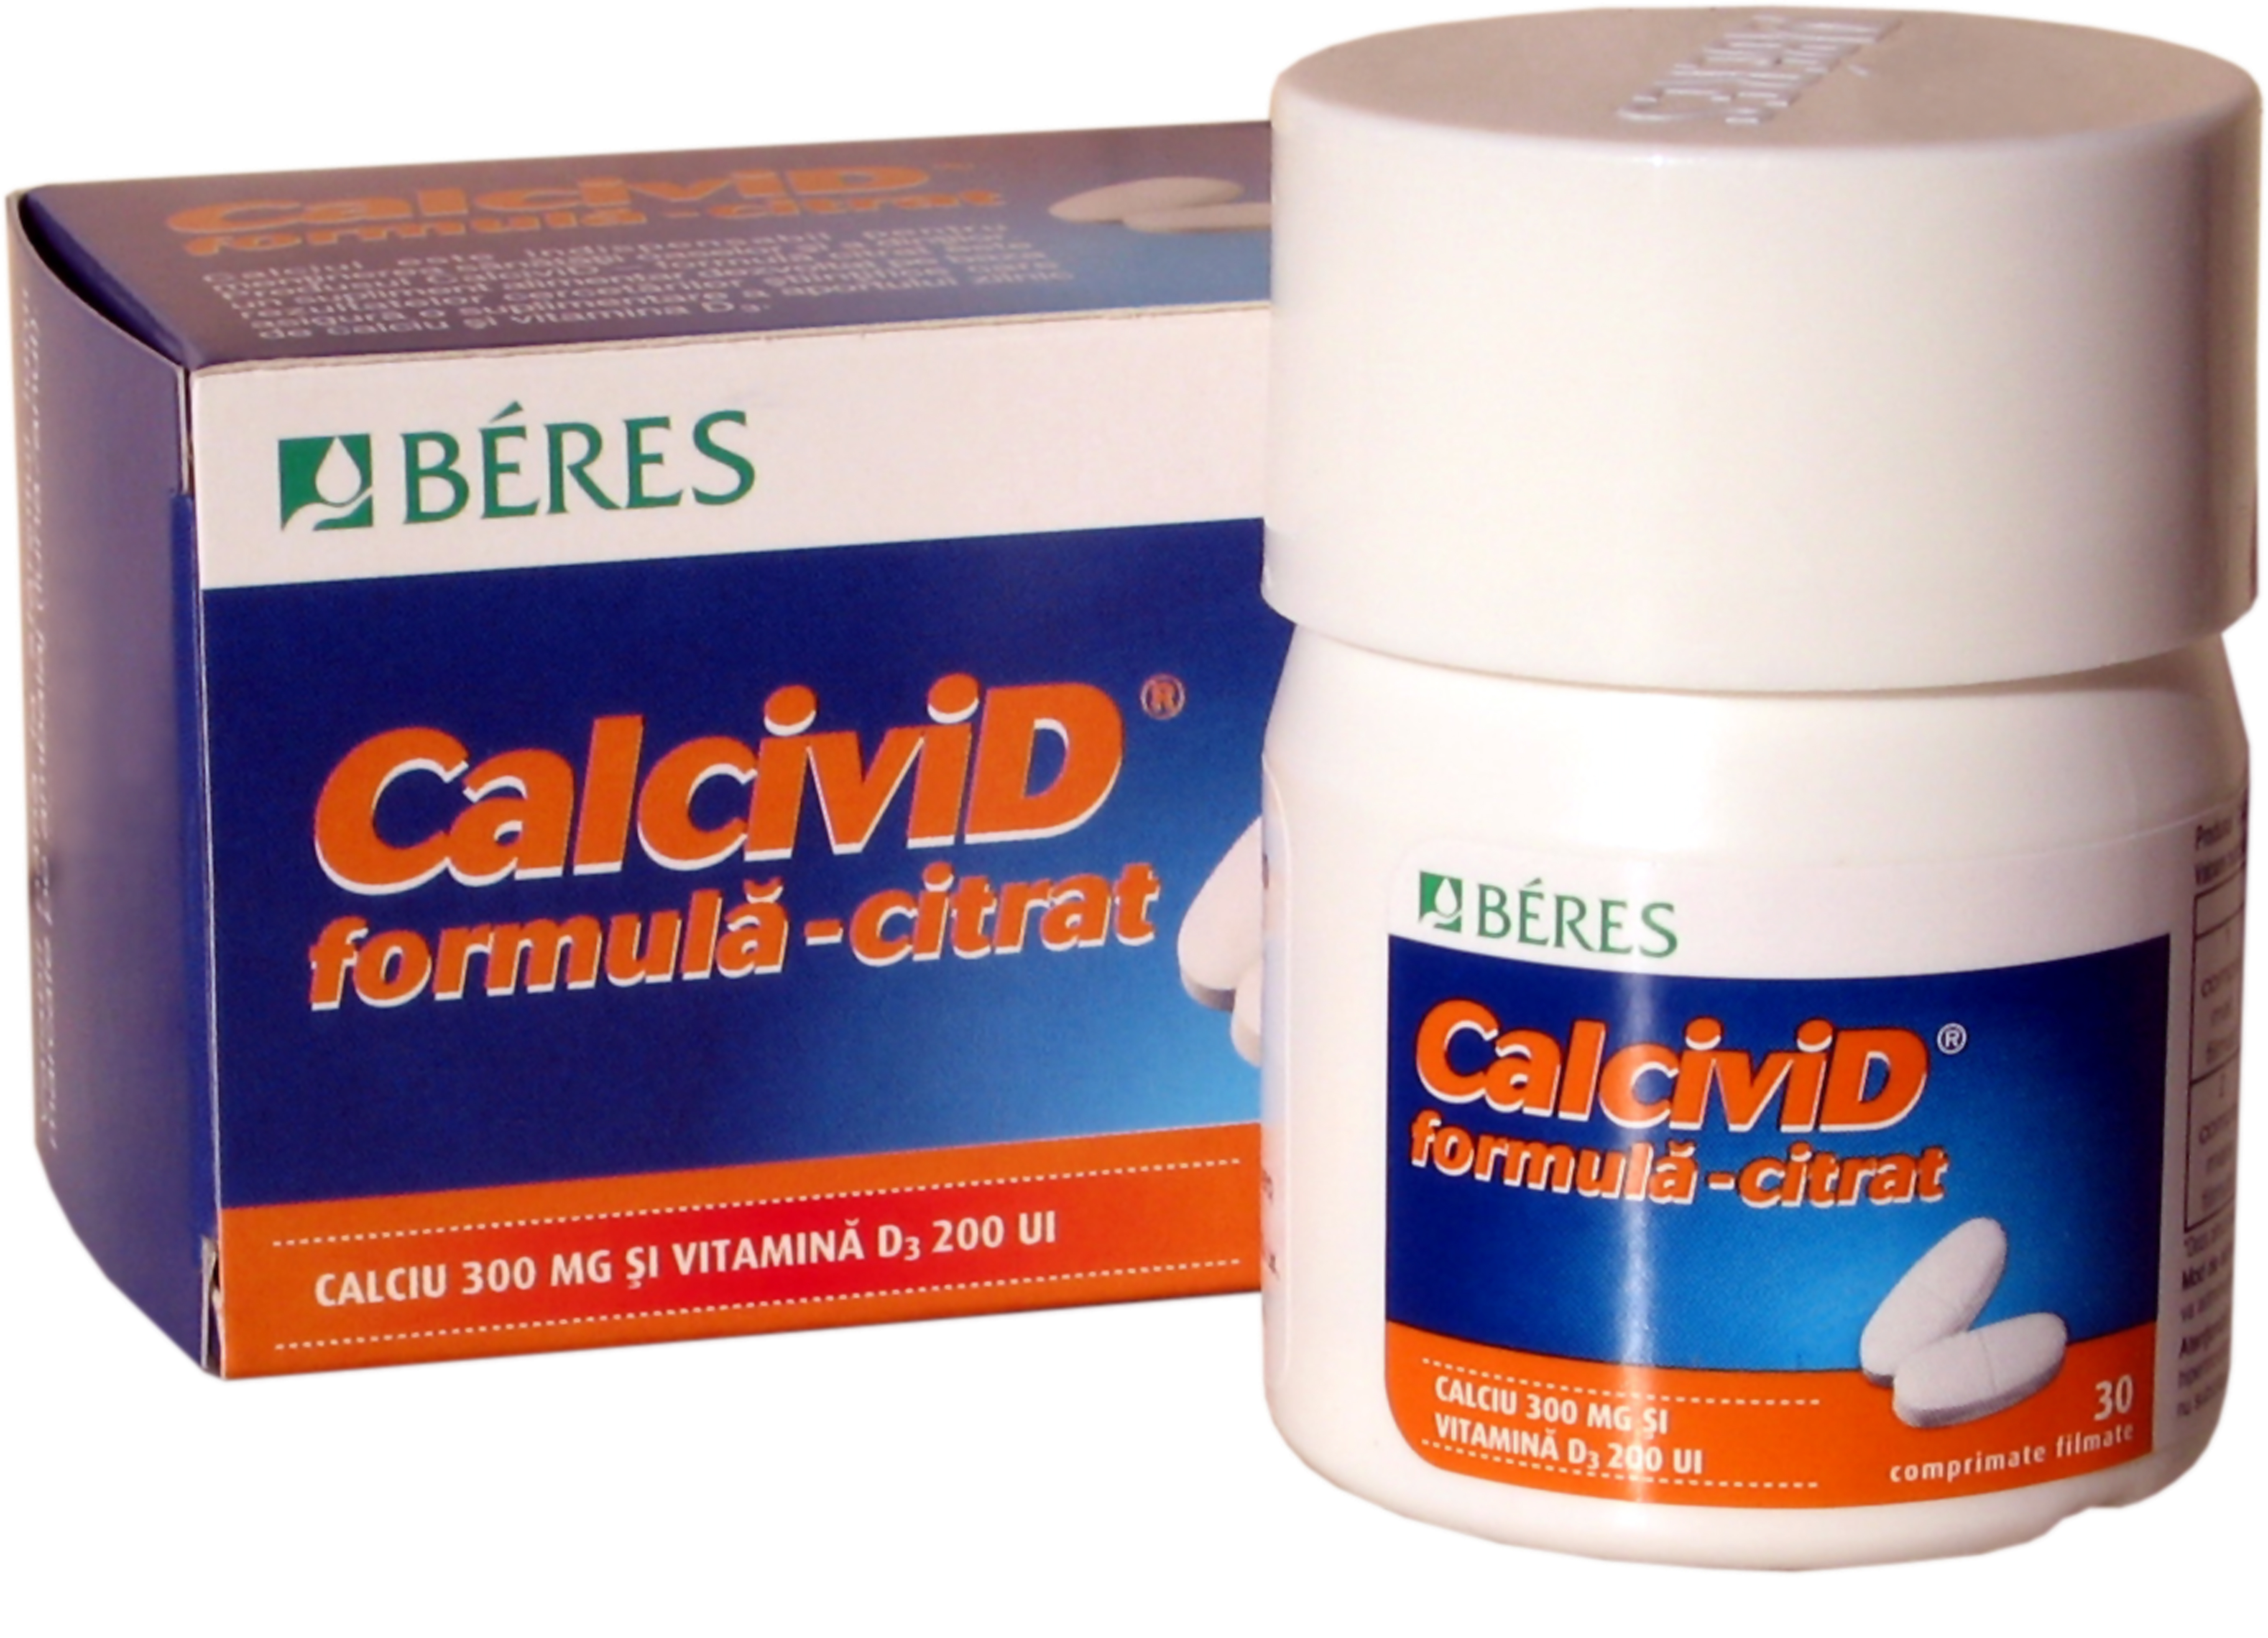 Calcivid Citrat, un complex de calciu care nu afecteaza functionarea normala a rinichilor